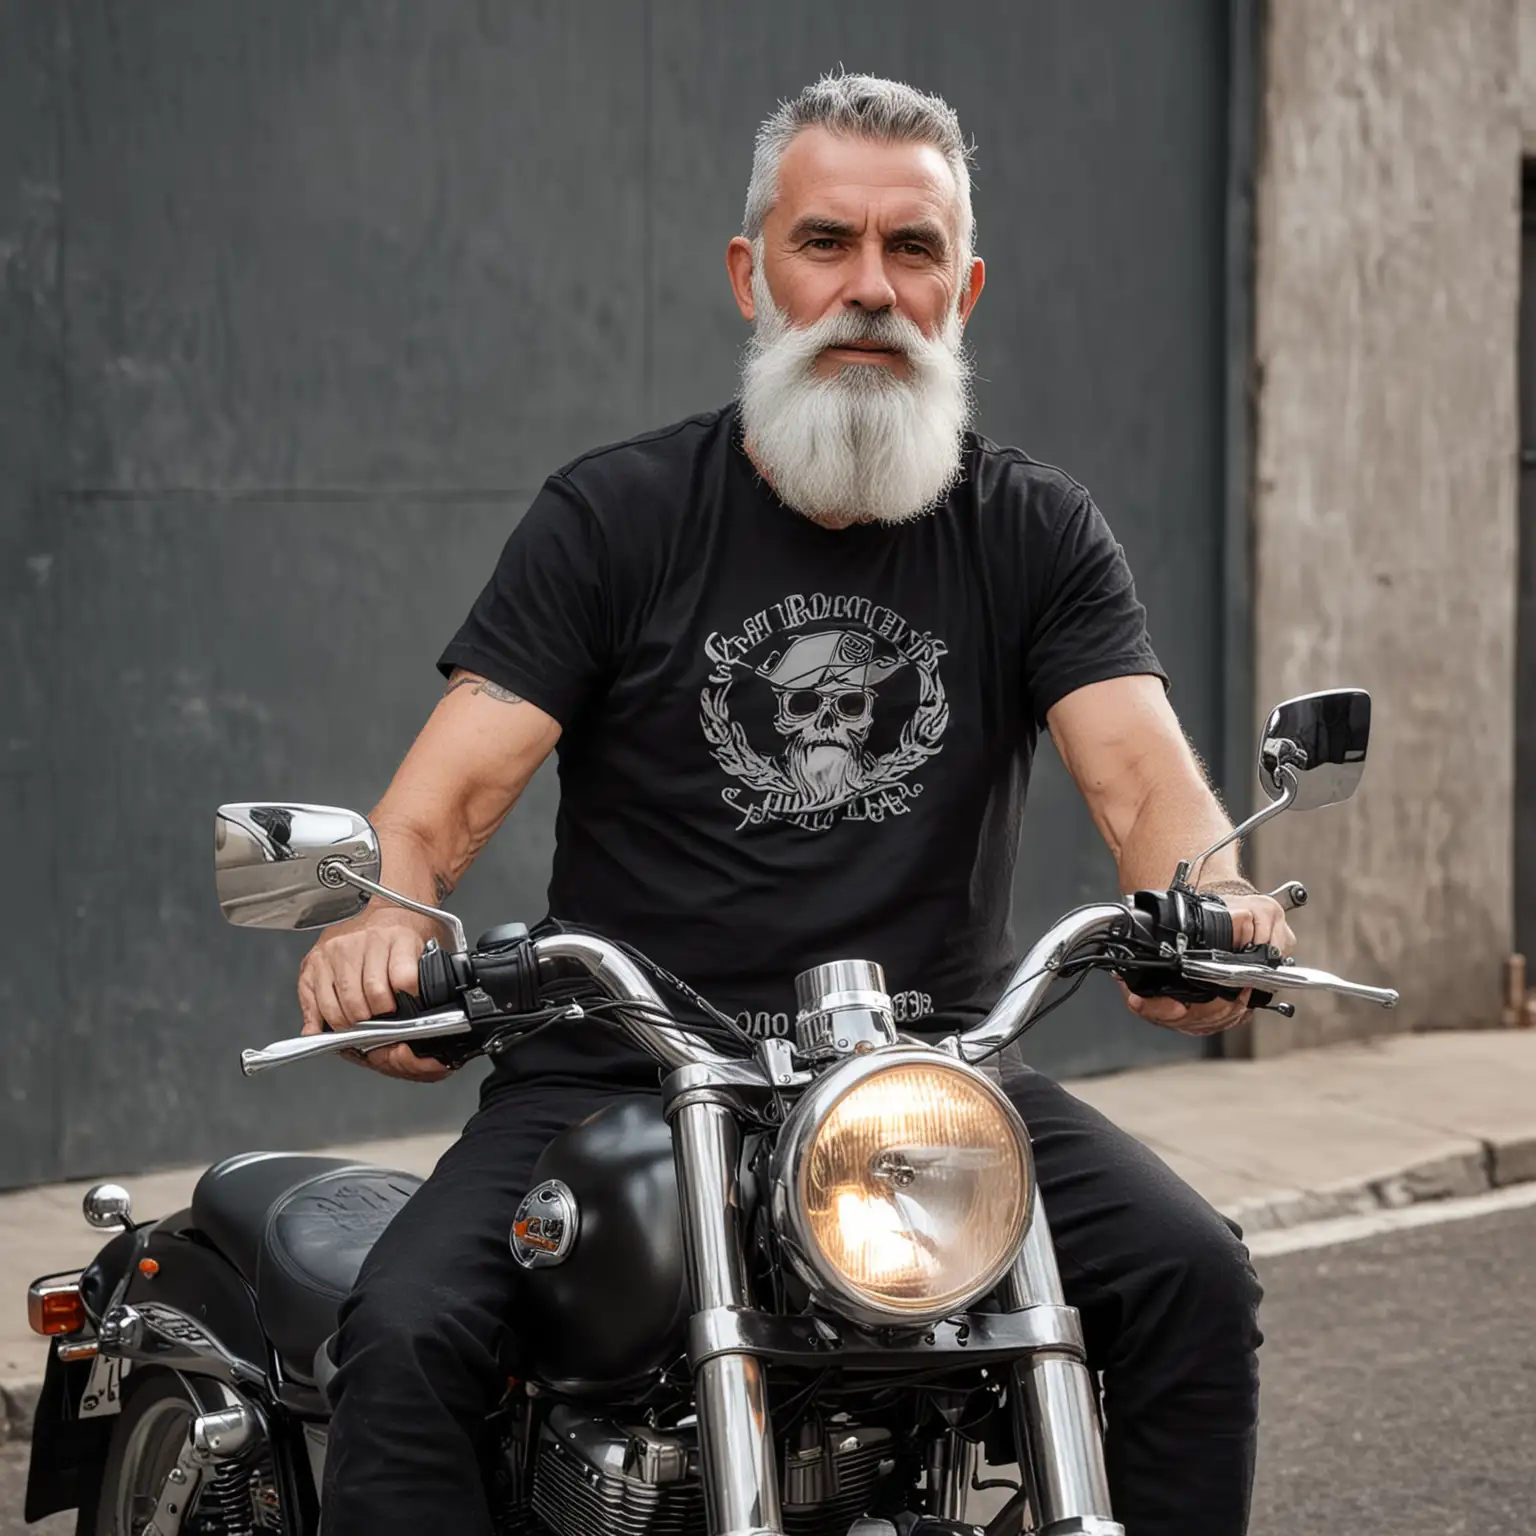 motocyklista z siwą brodą w czarnej koszulce na motocyklu